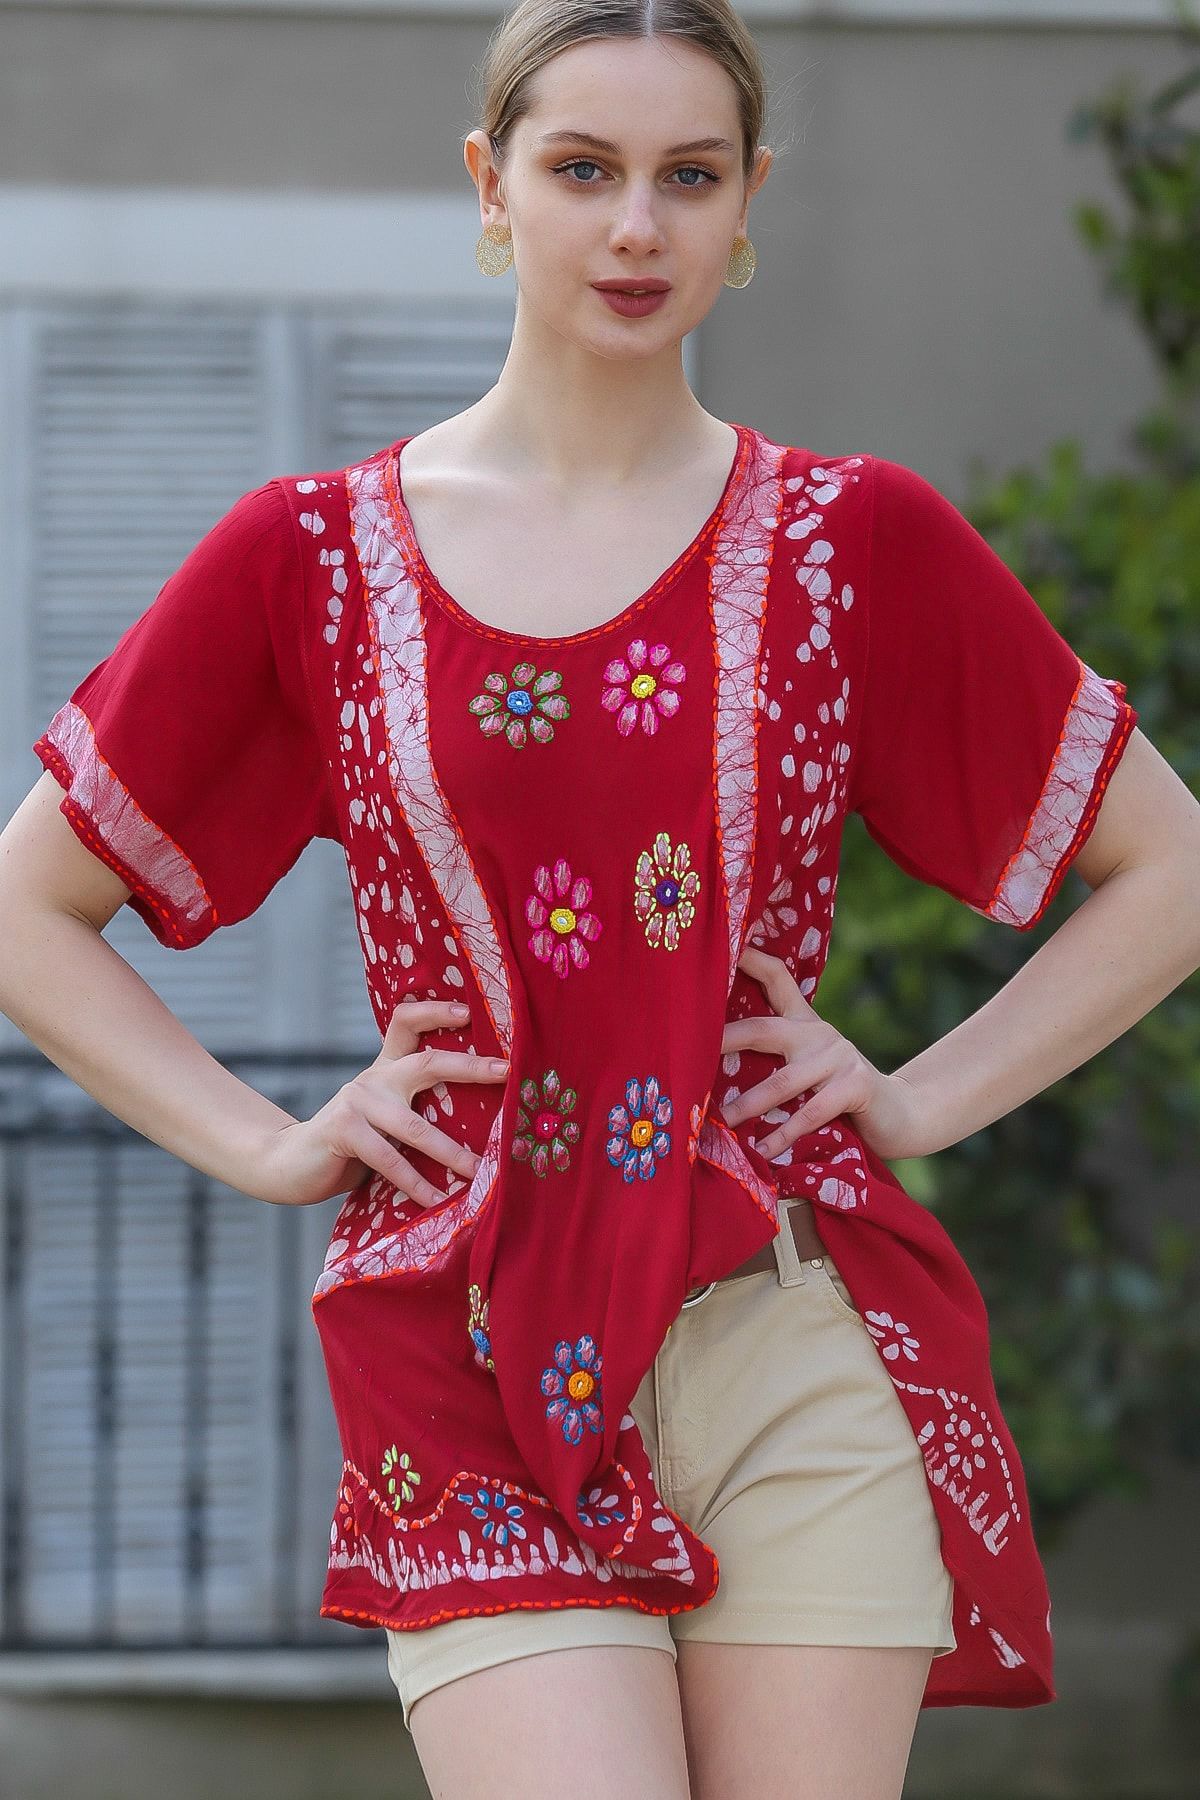 Chiccy Kadın Bordo U Yaka Çiçek Nakışlı Batik Desenli Salaş Tunik Bluz M10010200BL95380